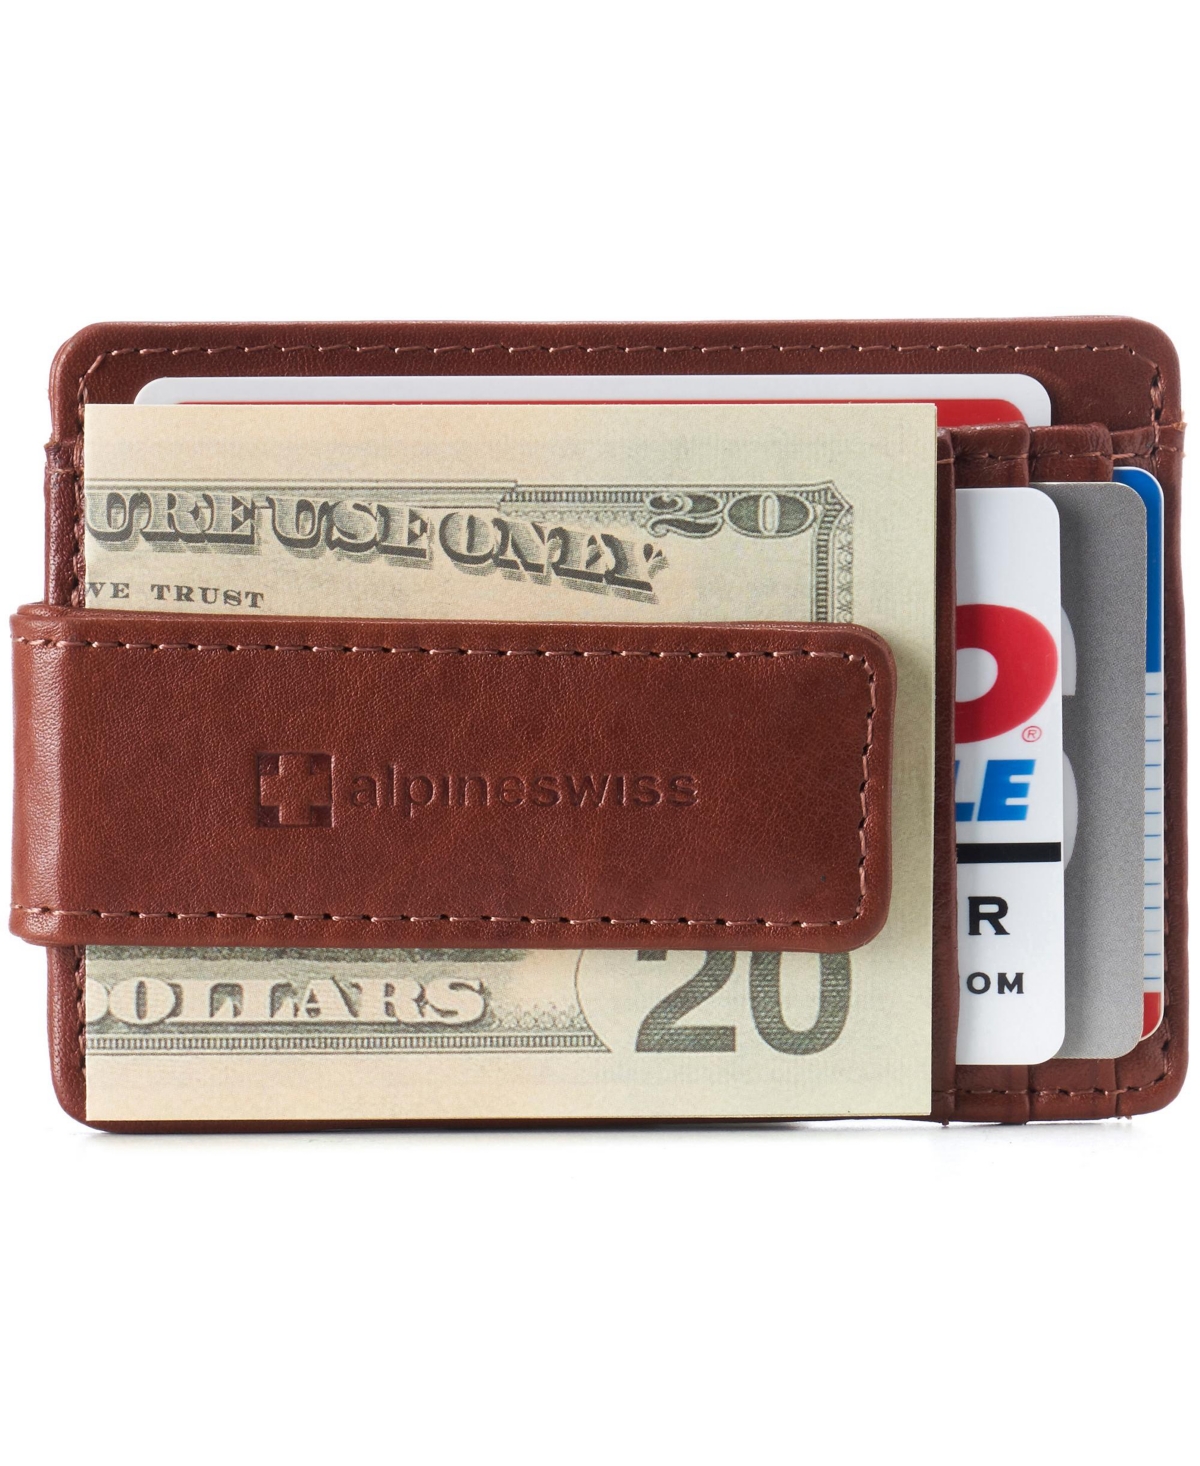 Mens Rfid Safe Magnetic Money Clip Wallet Slim Front Pocket Wallet - Brown